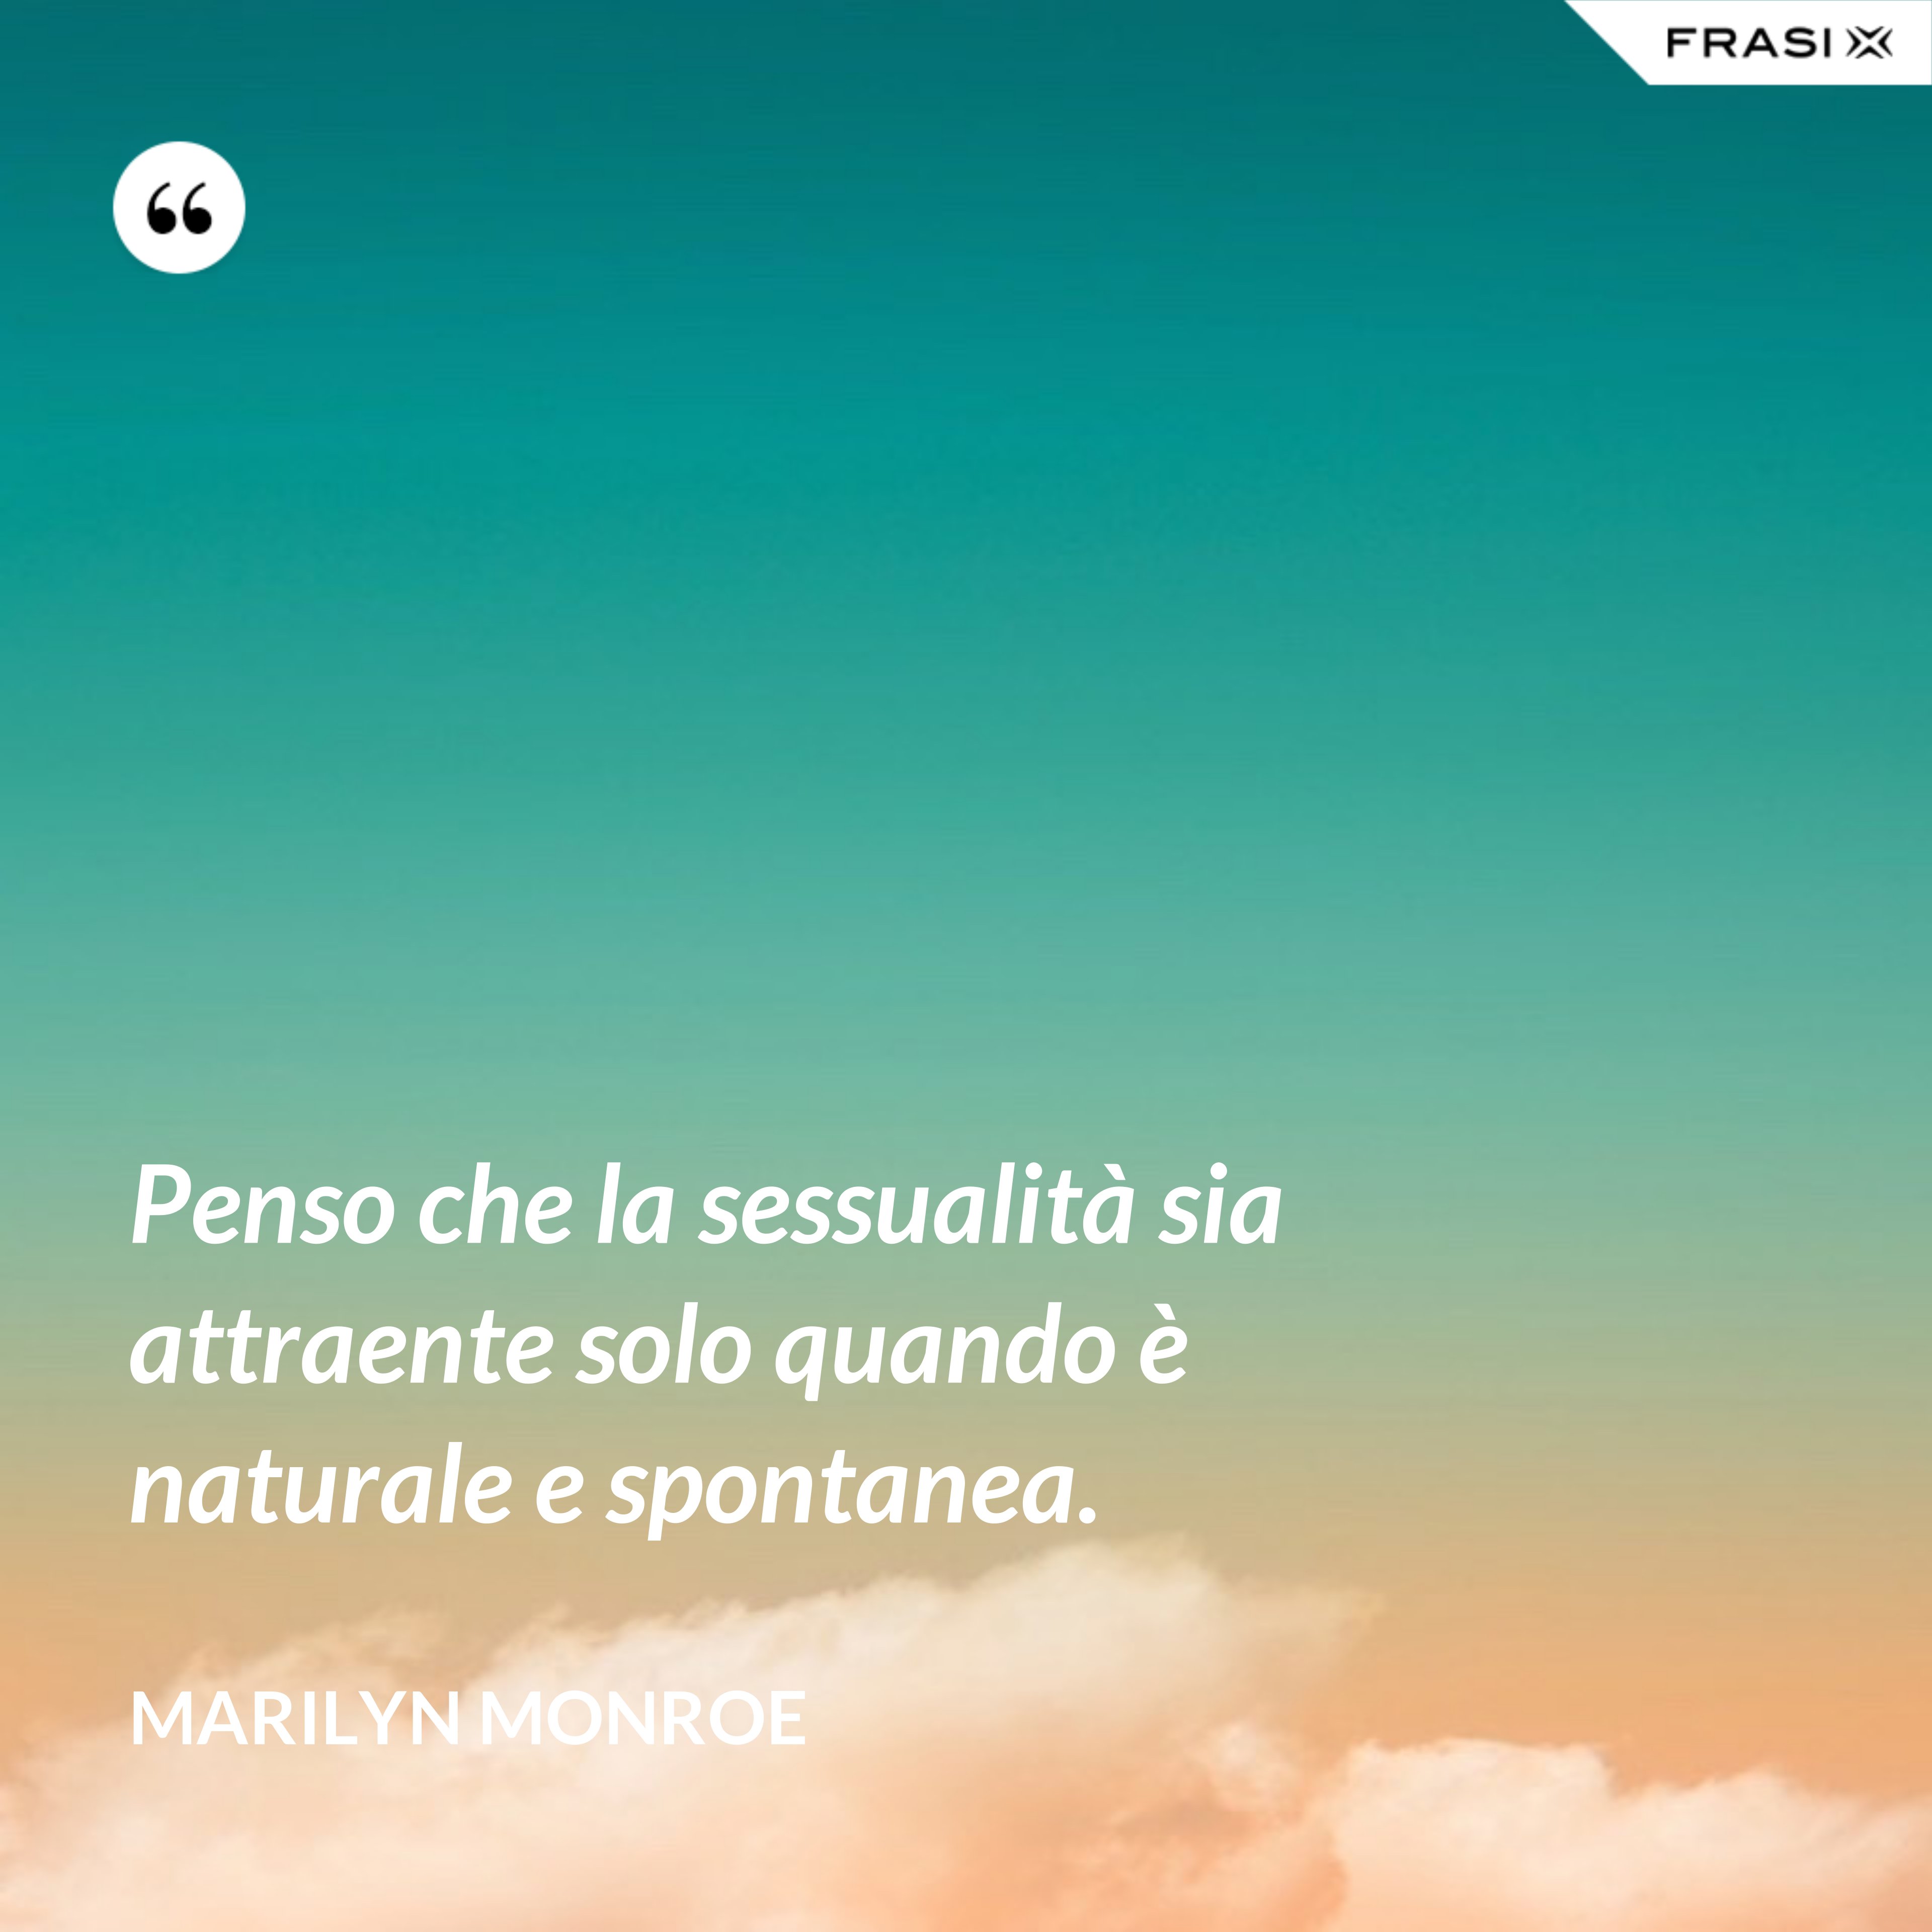 Penso che la sessualità sia attraente solo quando è naturale e spontanea. - Marilyn Monroe